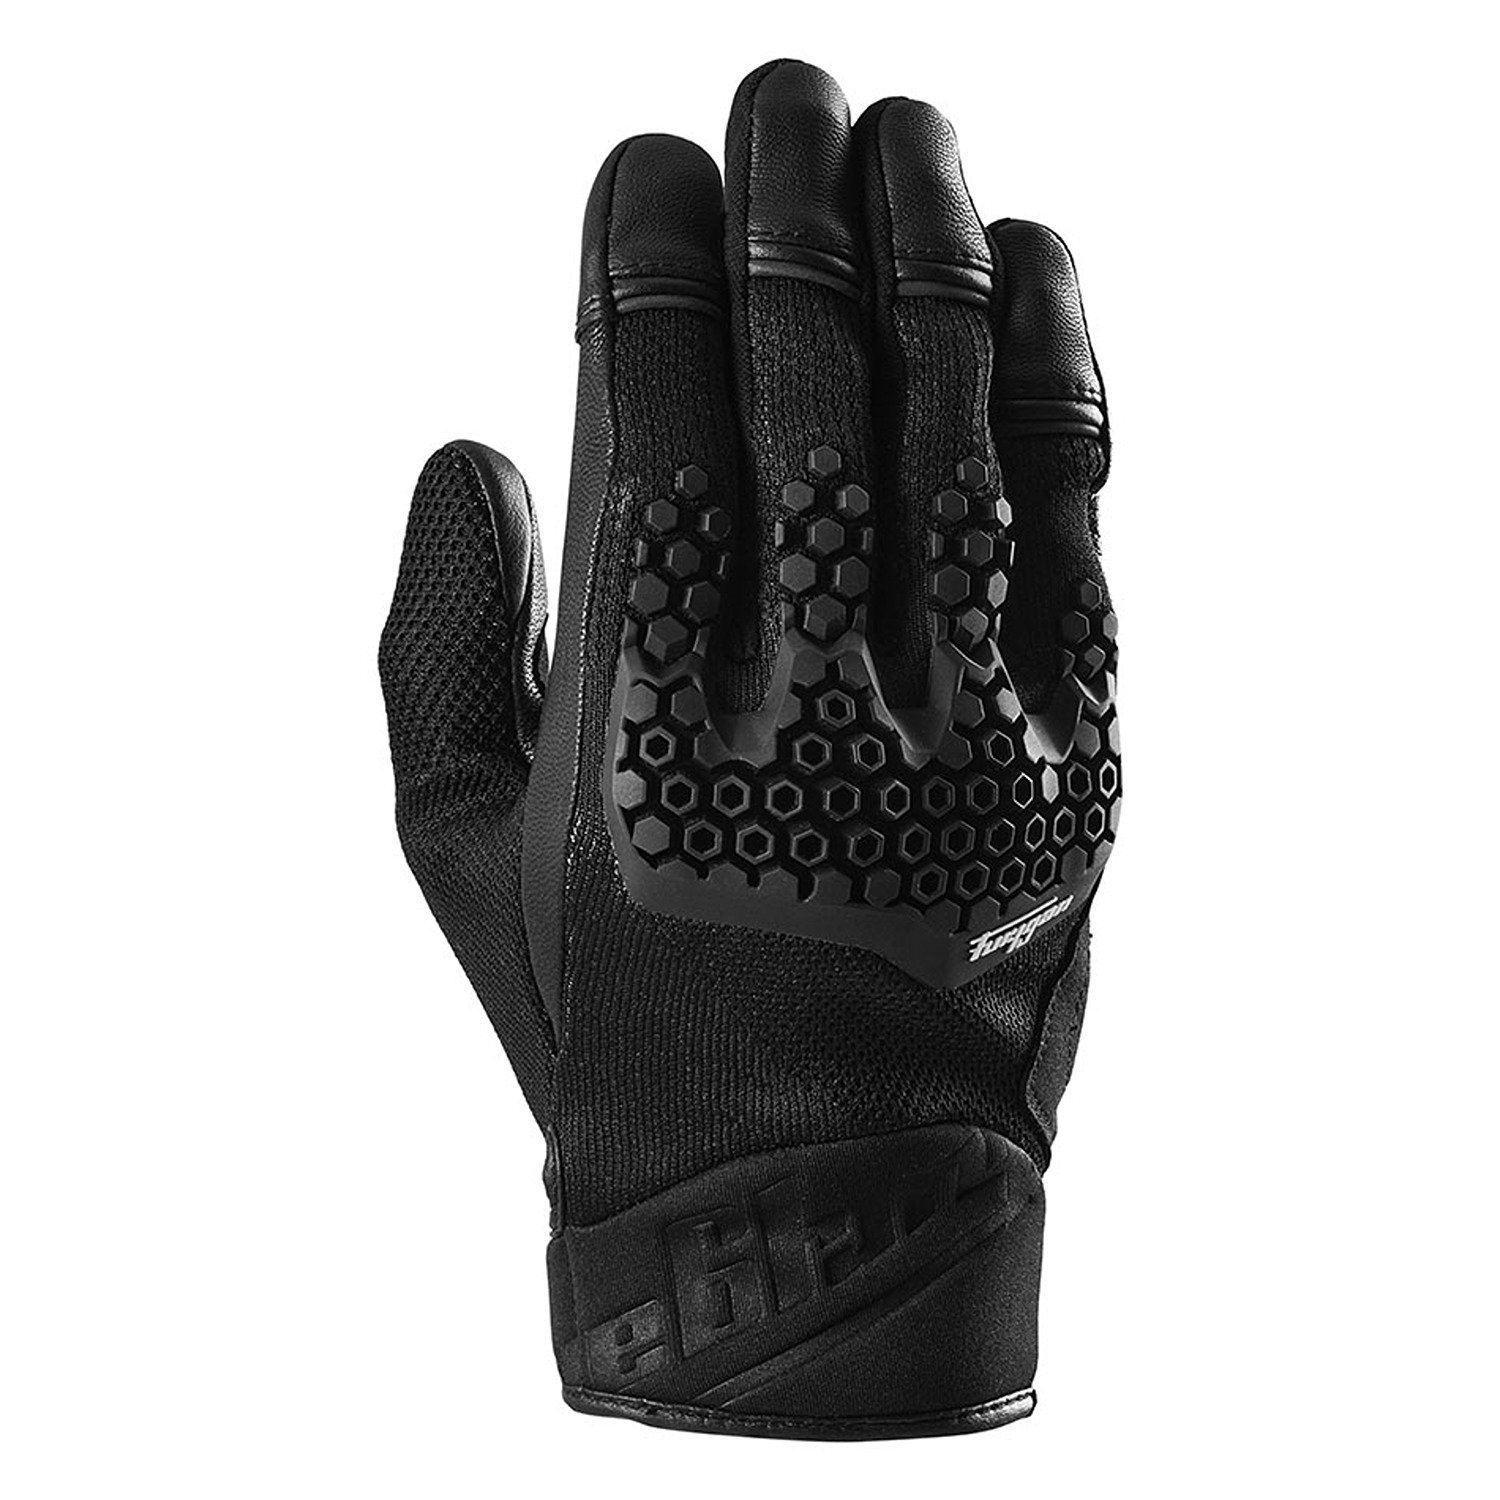 Image of Furygan Jack Gloves Black Taille 2XL